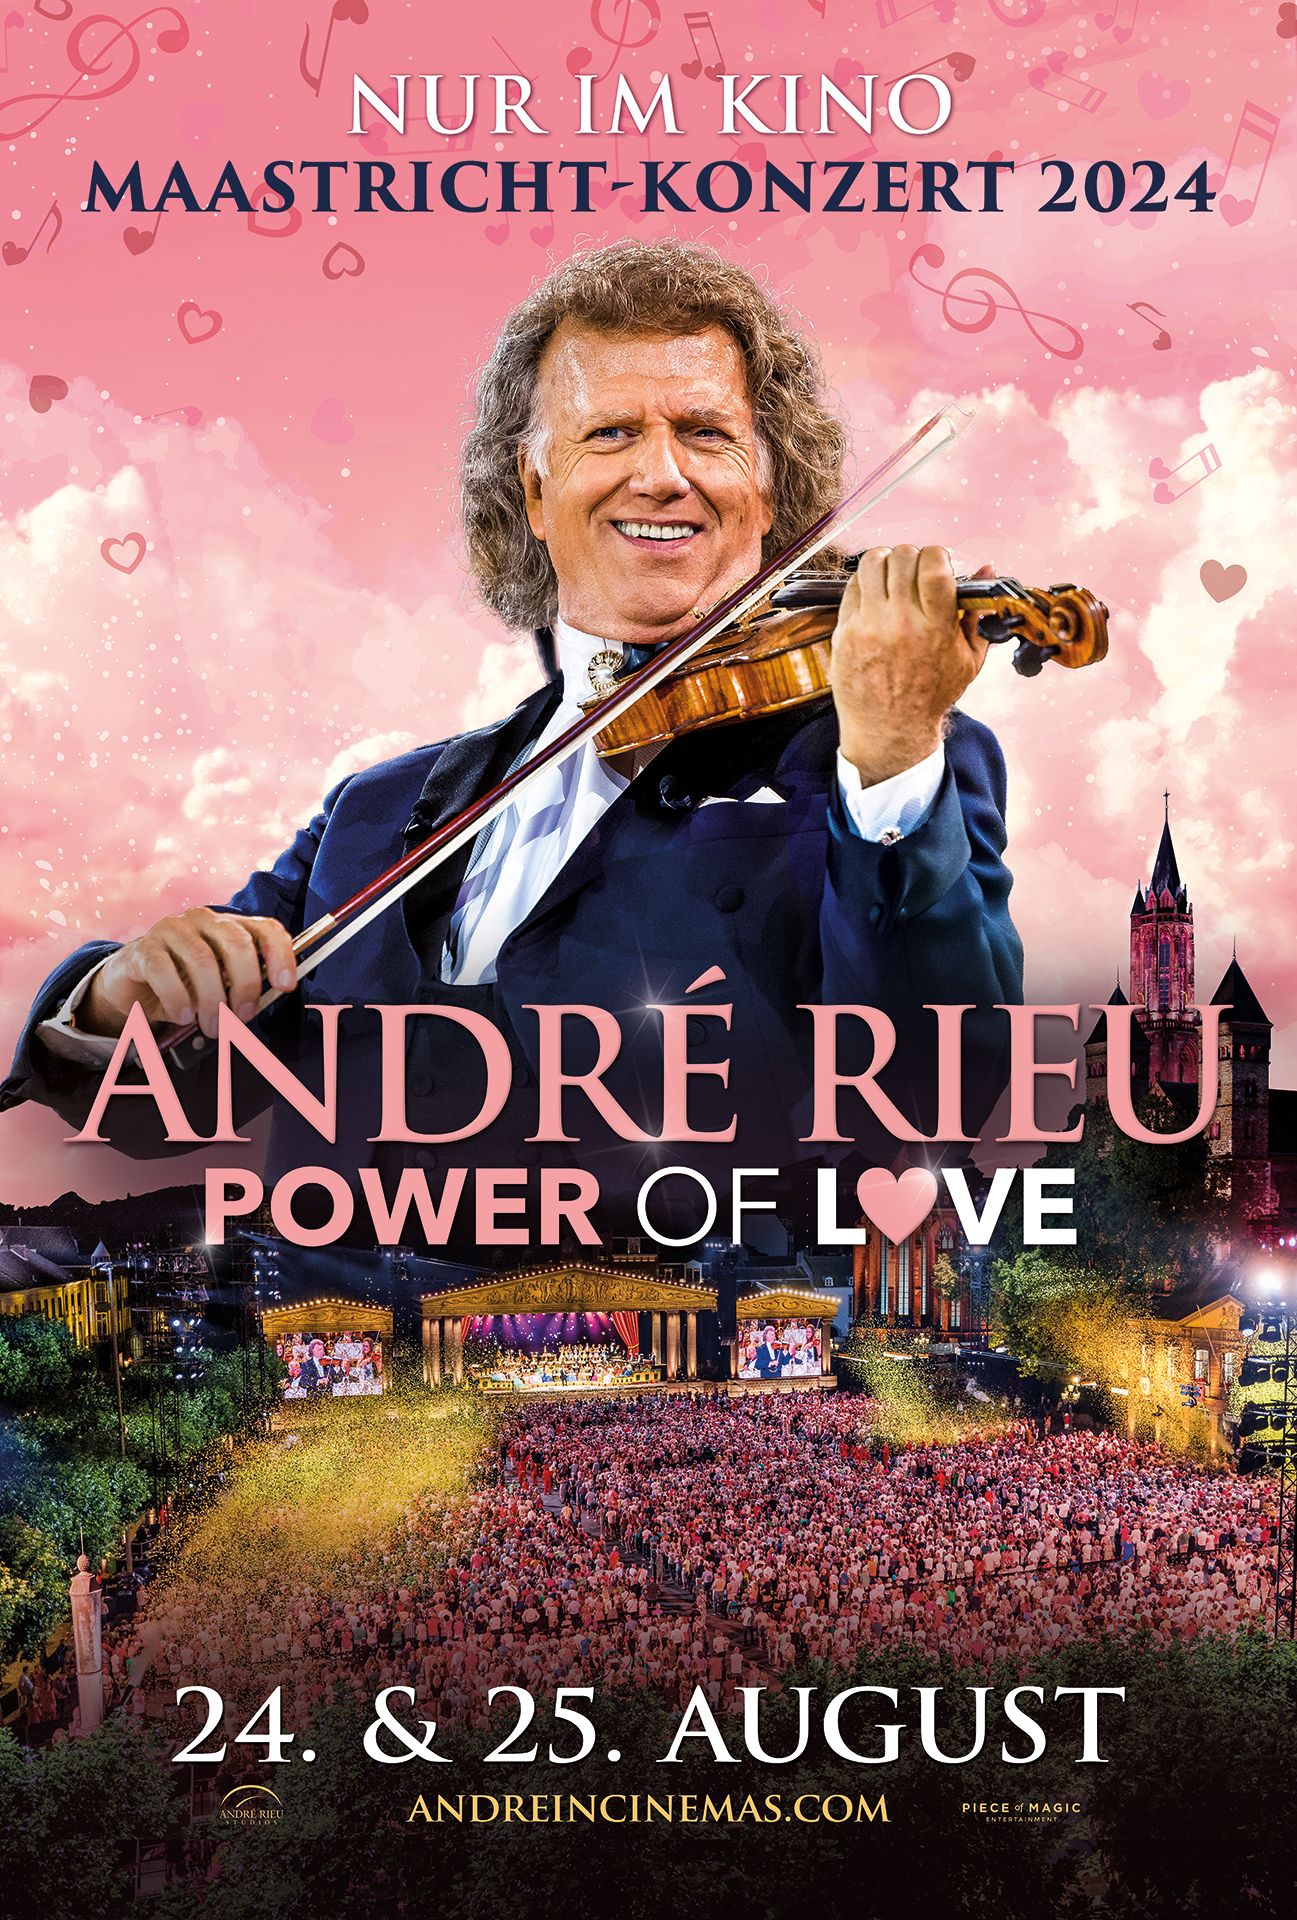 André Rieu - Power of Love Maastricht-Konzert 2024